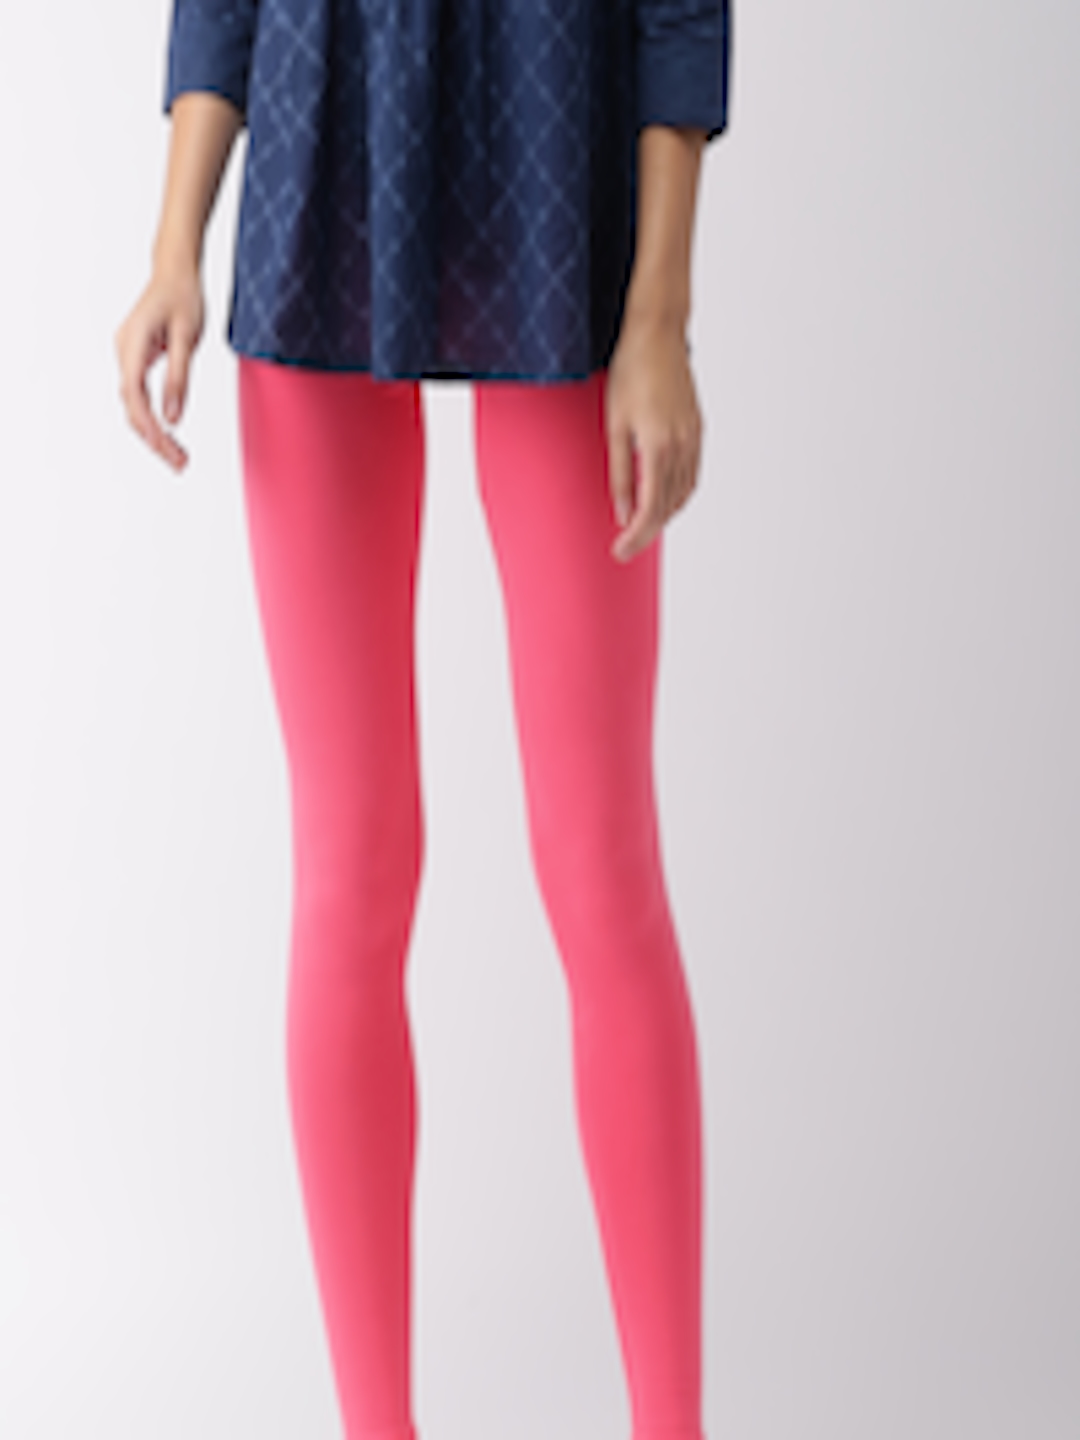 Buy GO COLORS Womens Shimmer Leggings | Shoppers Stop-anthinhphatland.vn